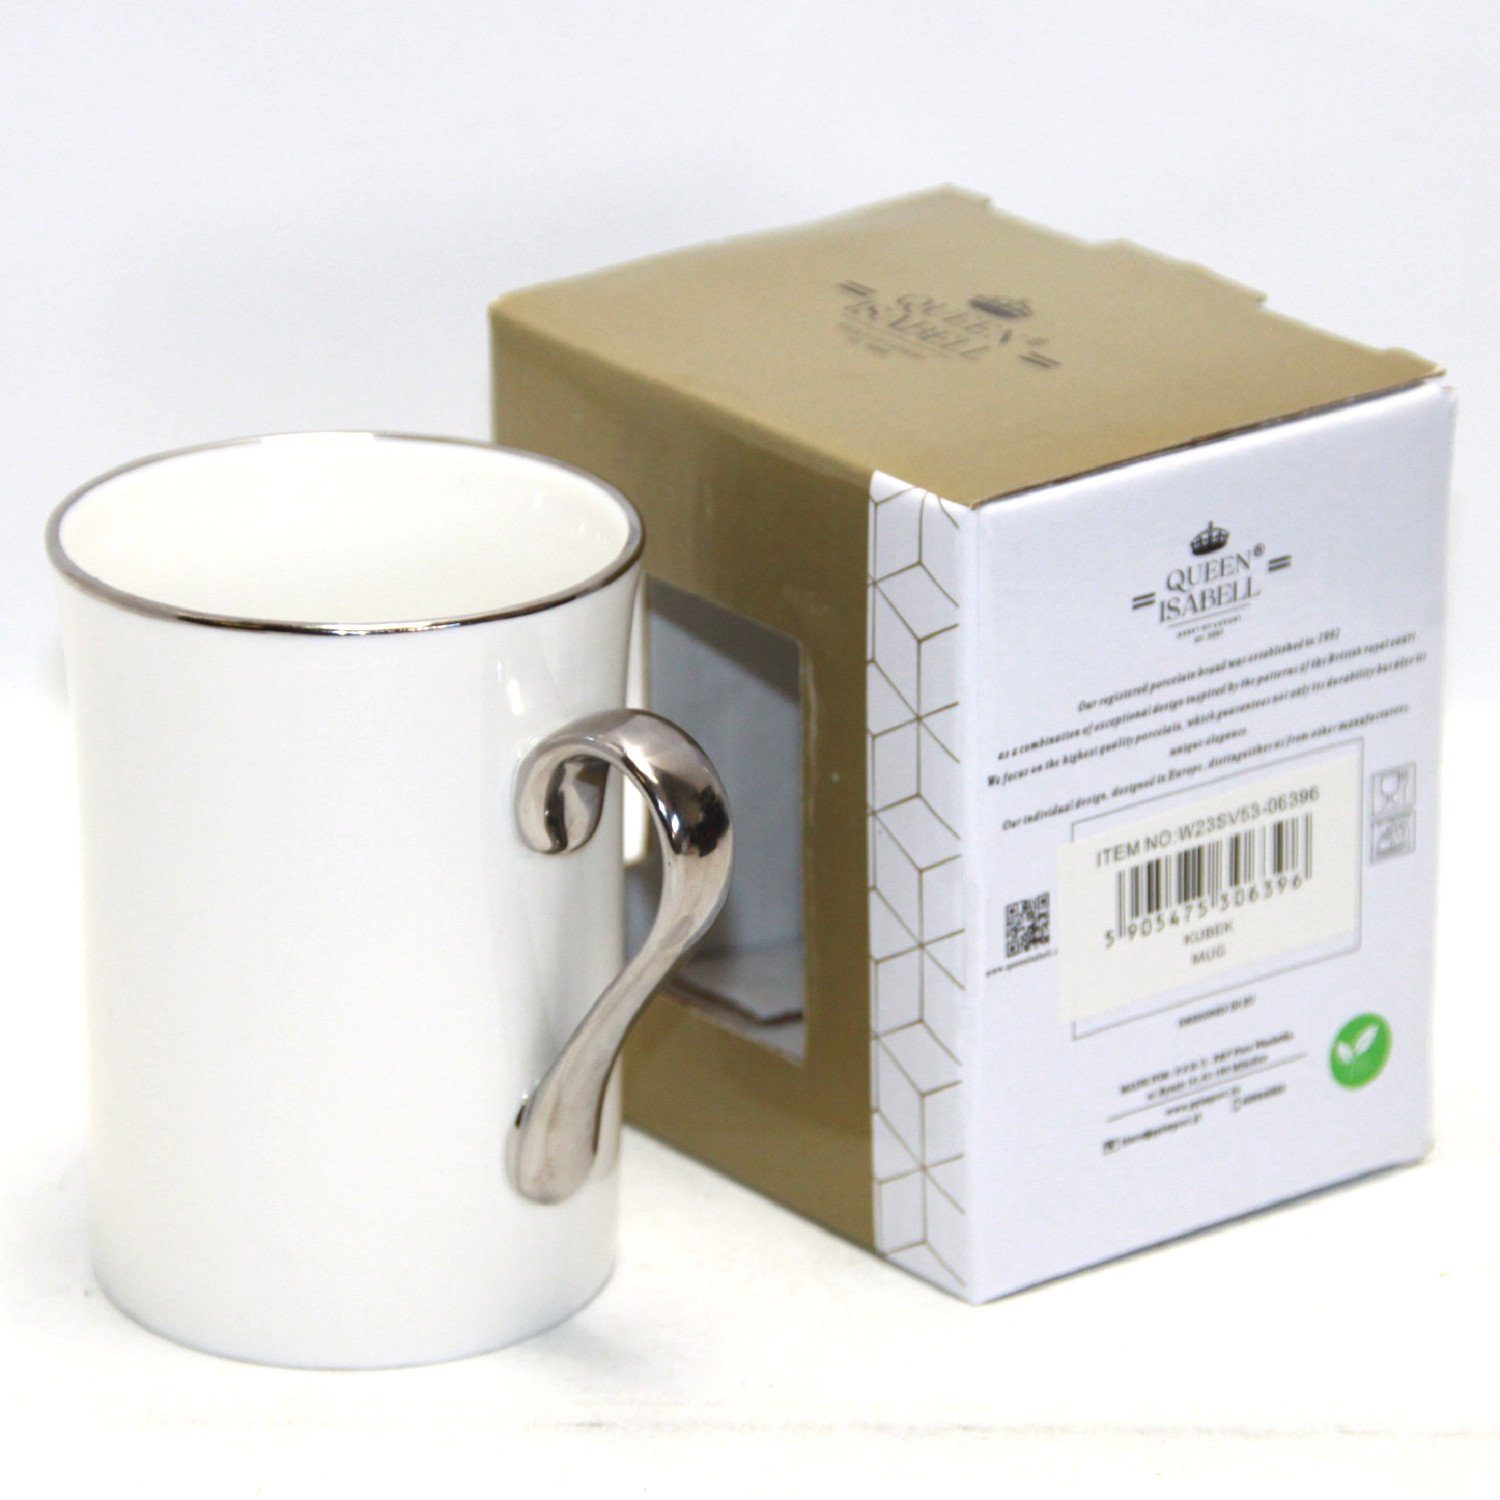 Porzellan-Kaffeebecher Isabell Queen 250ml W23SV53-06396, Becher